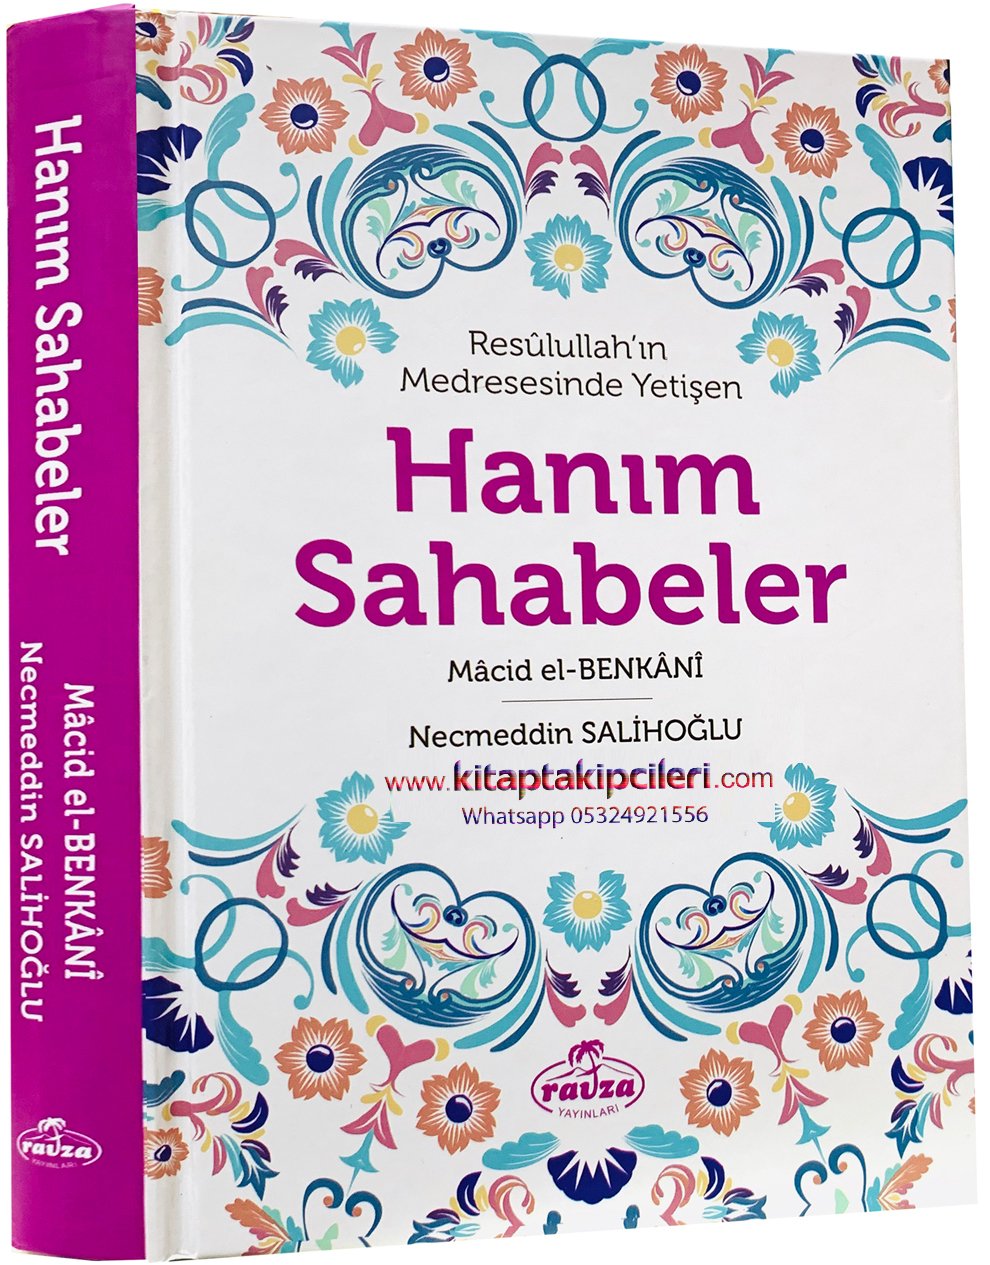 Hanım Sahabeler, Resulullahın Medresesinde Yetişen, Macid El Benkani, Necmeddin Salihoğlu, Ciltli 320 Sayfa